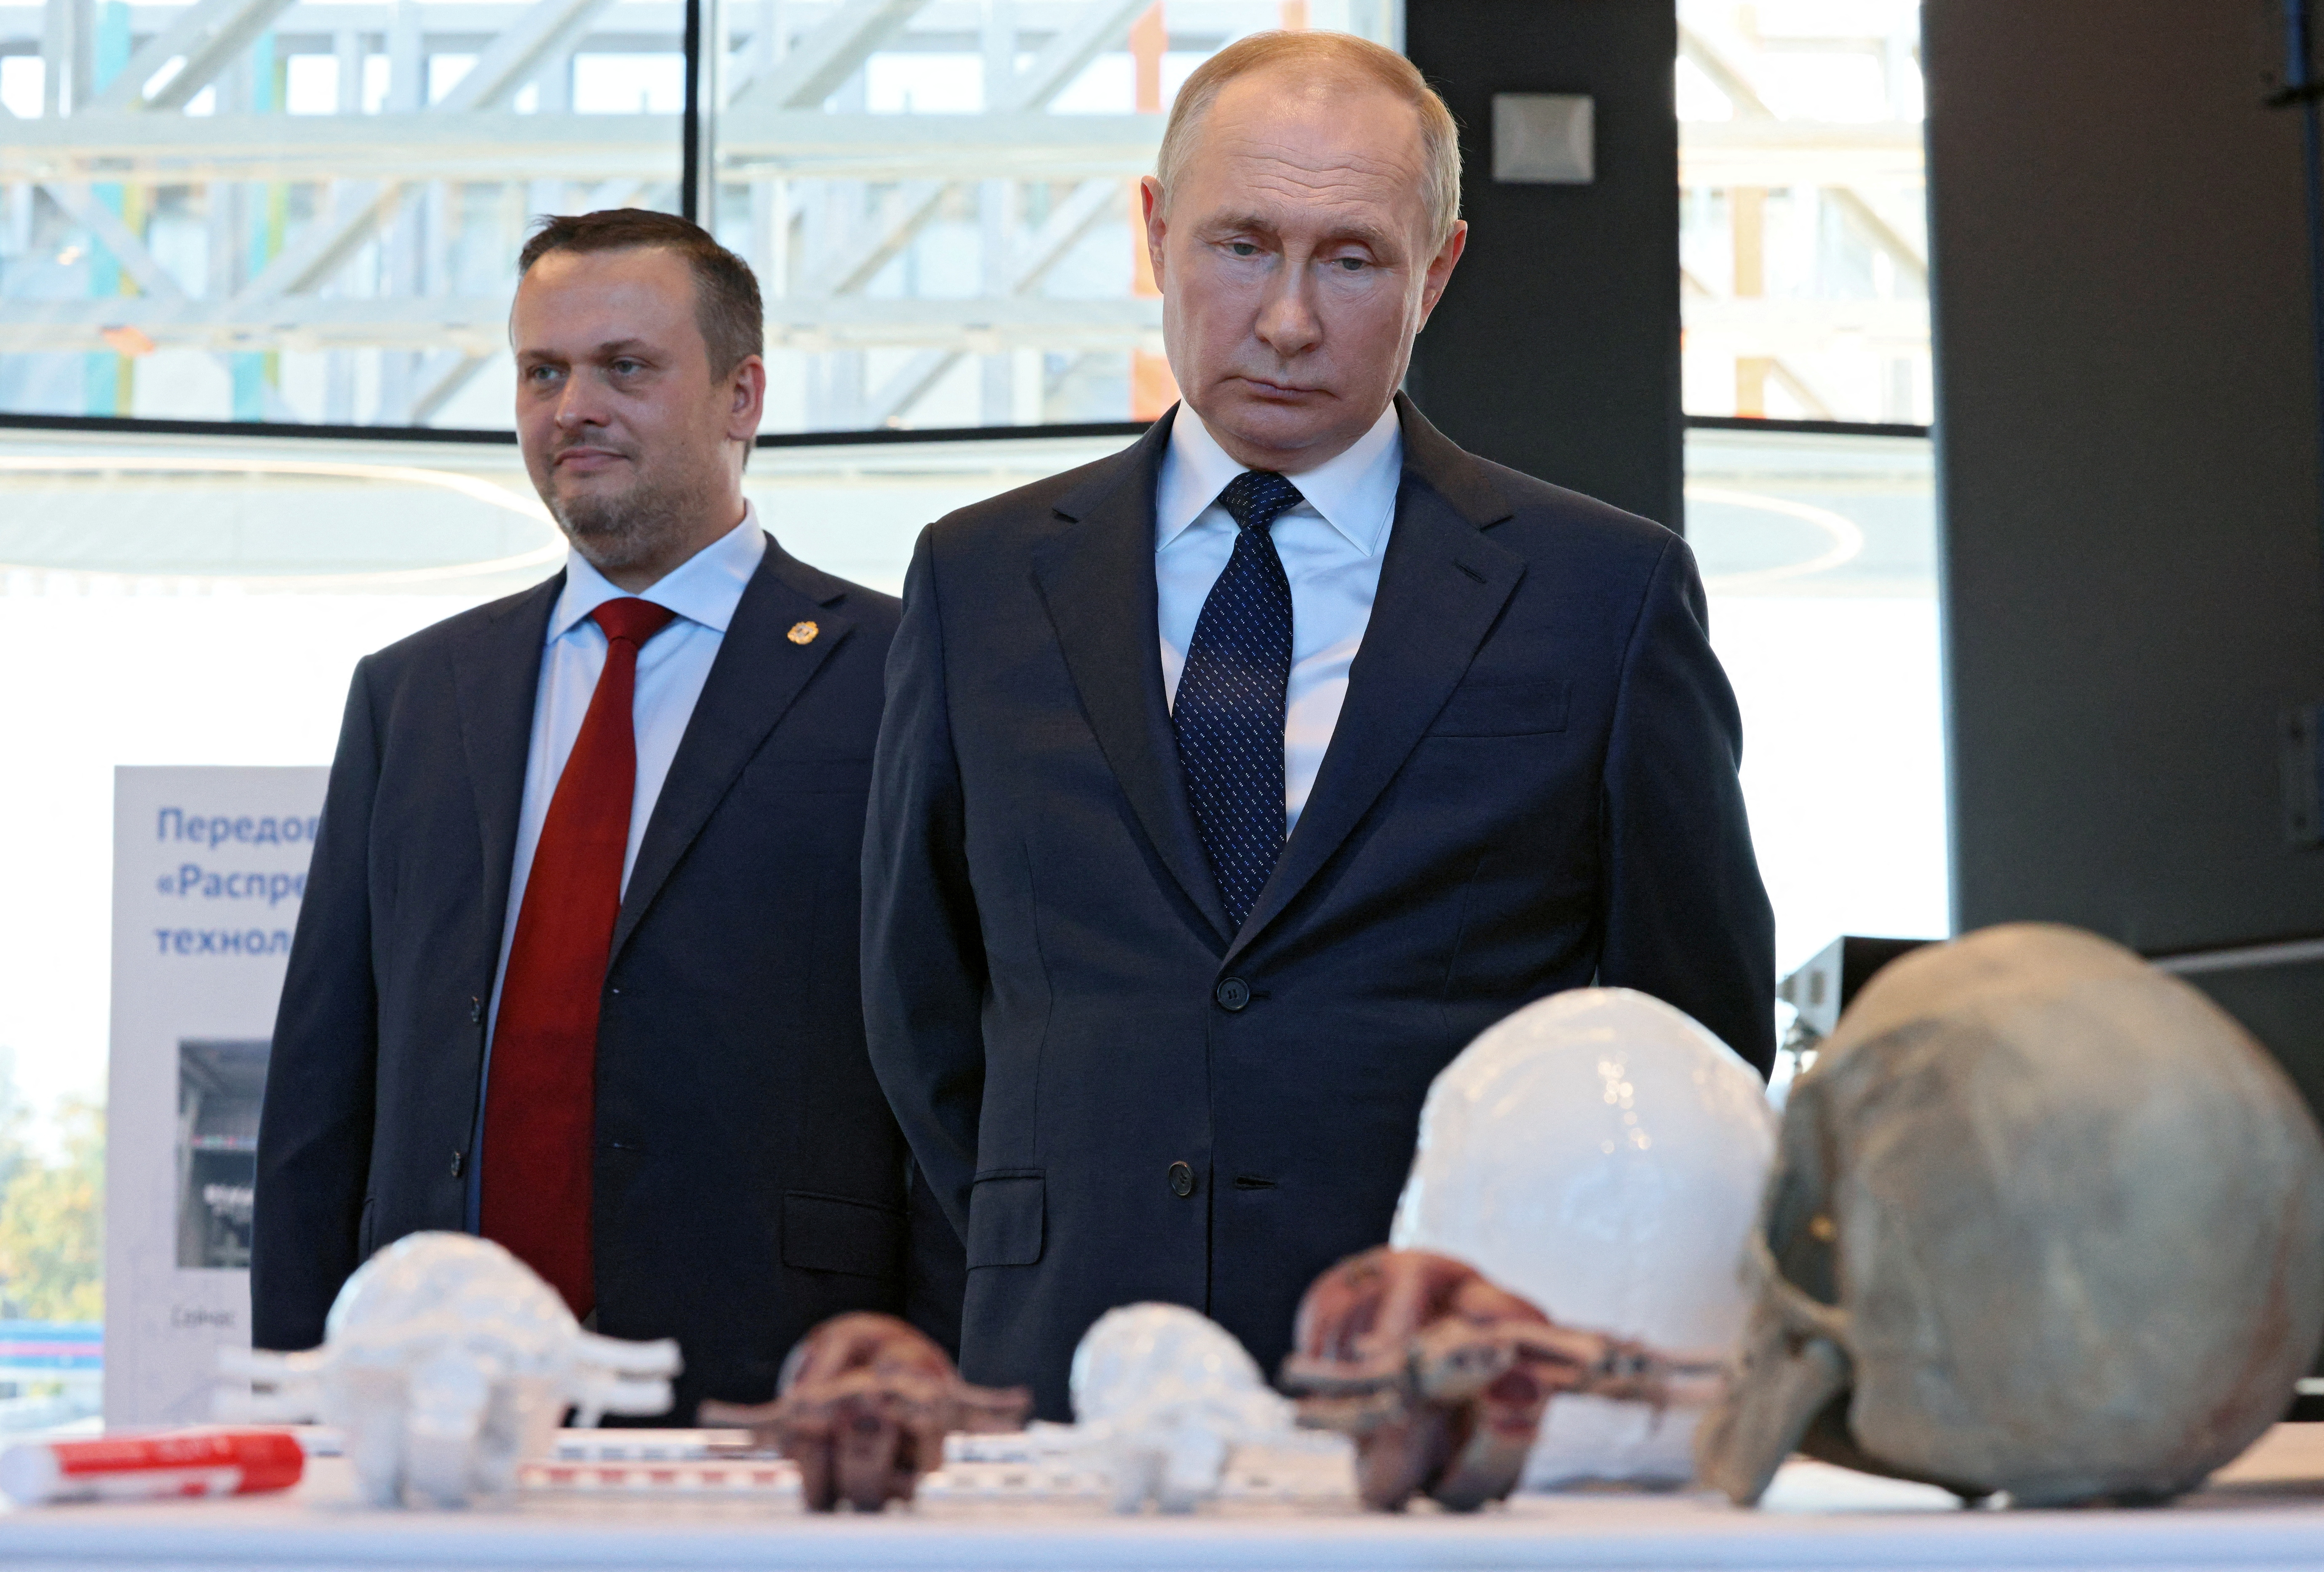 El jefe del régimen ruso, Vladimir Putin, durante una visita a Veliky Novgorod. Este miércoles anunció el envío de más tropas a Ucrania lo que desató protestas en todo el país (Reuters)